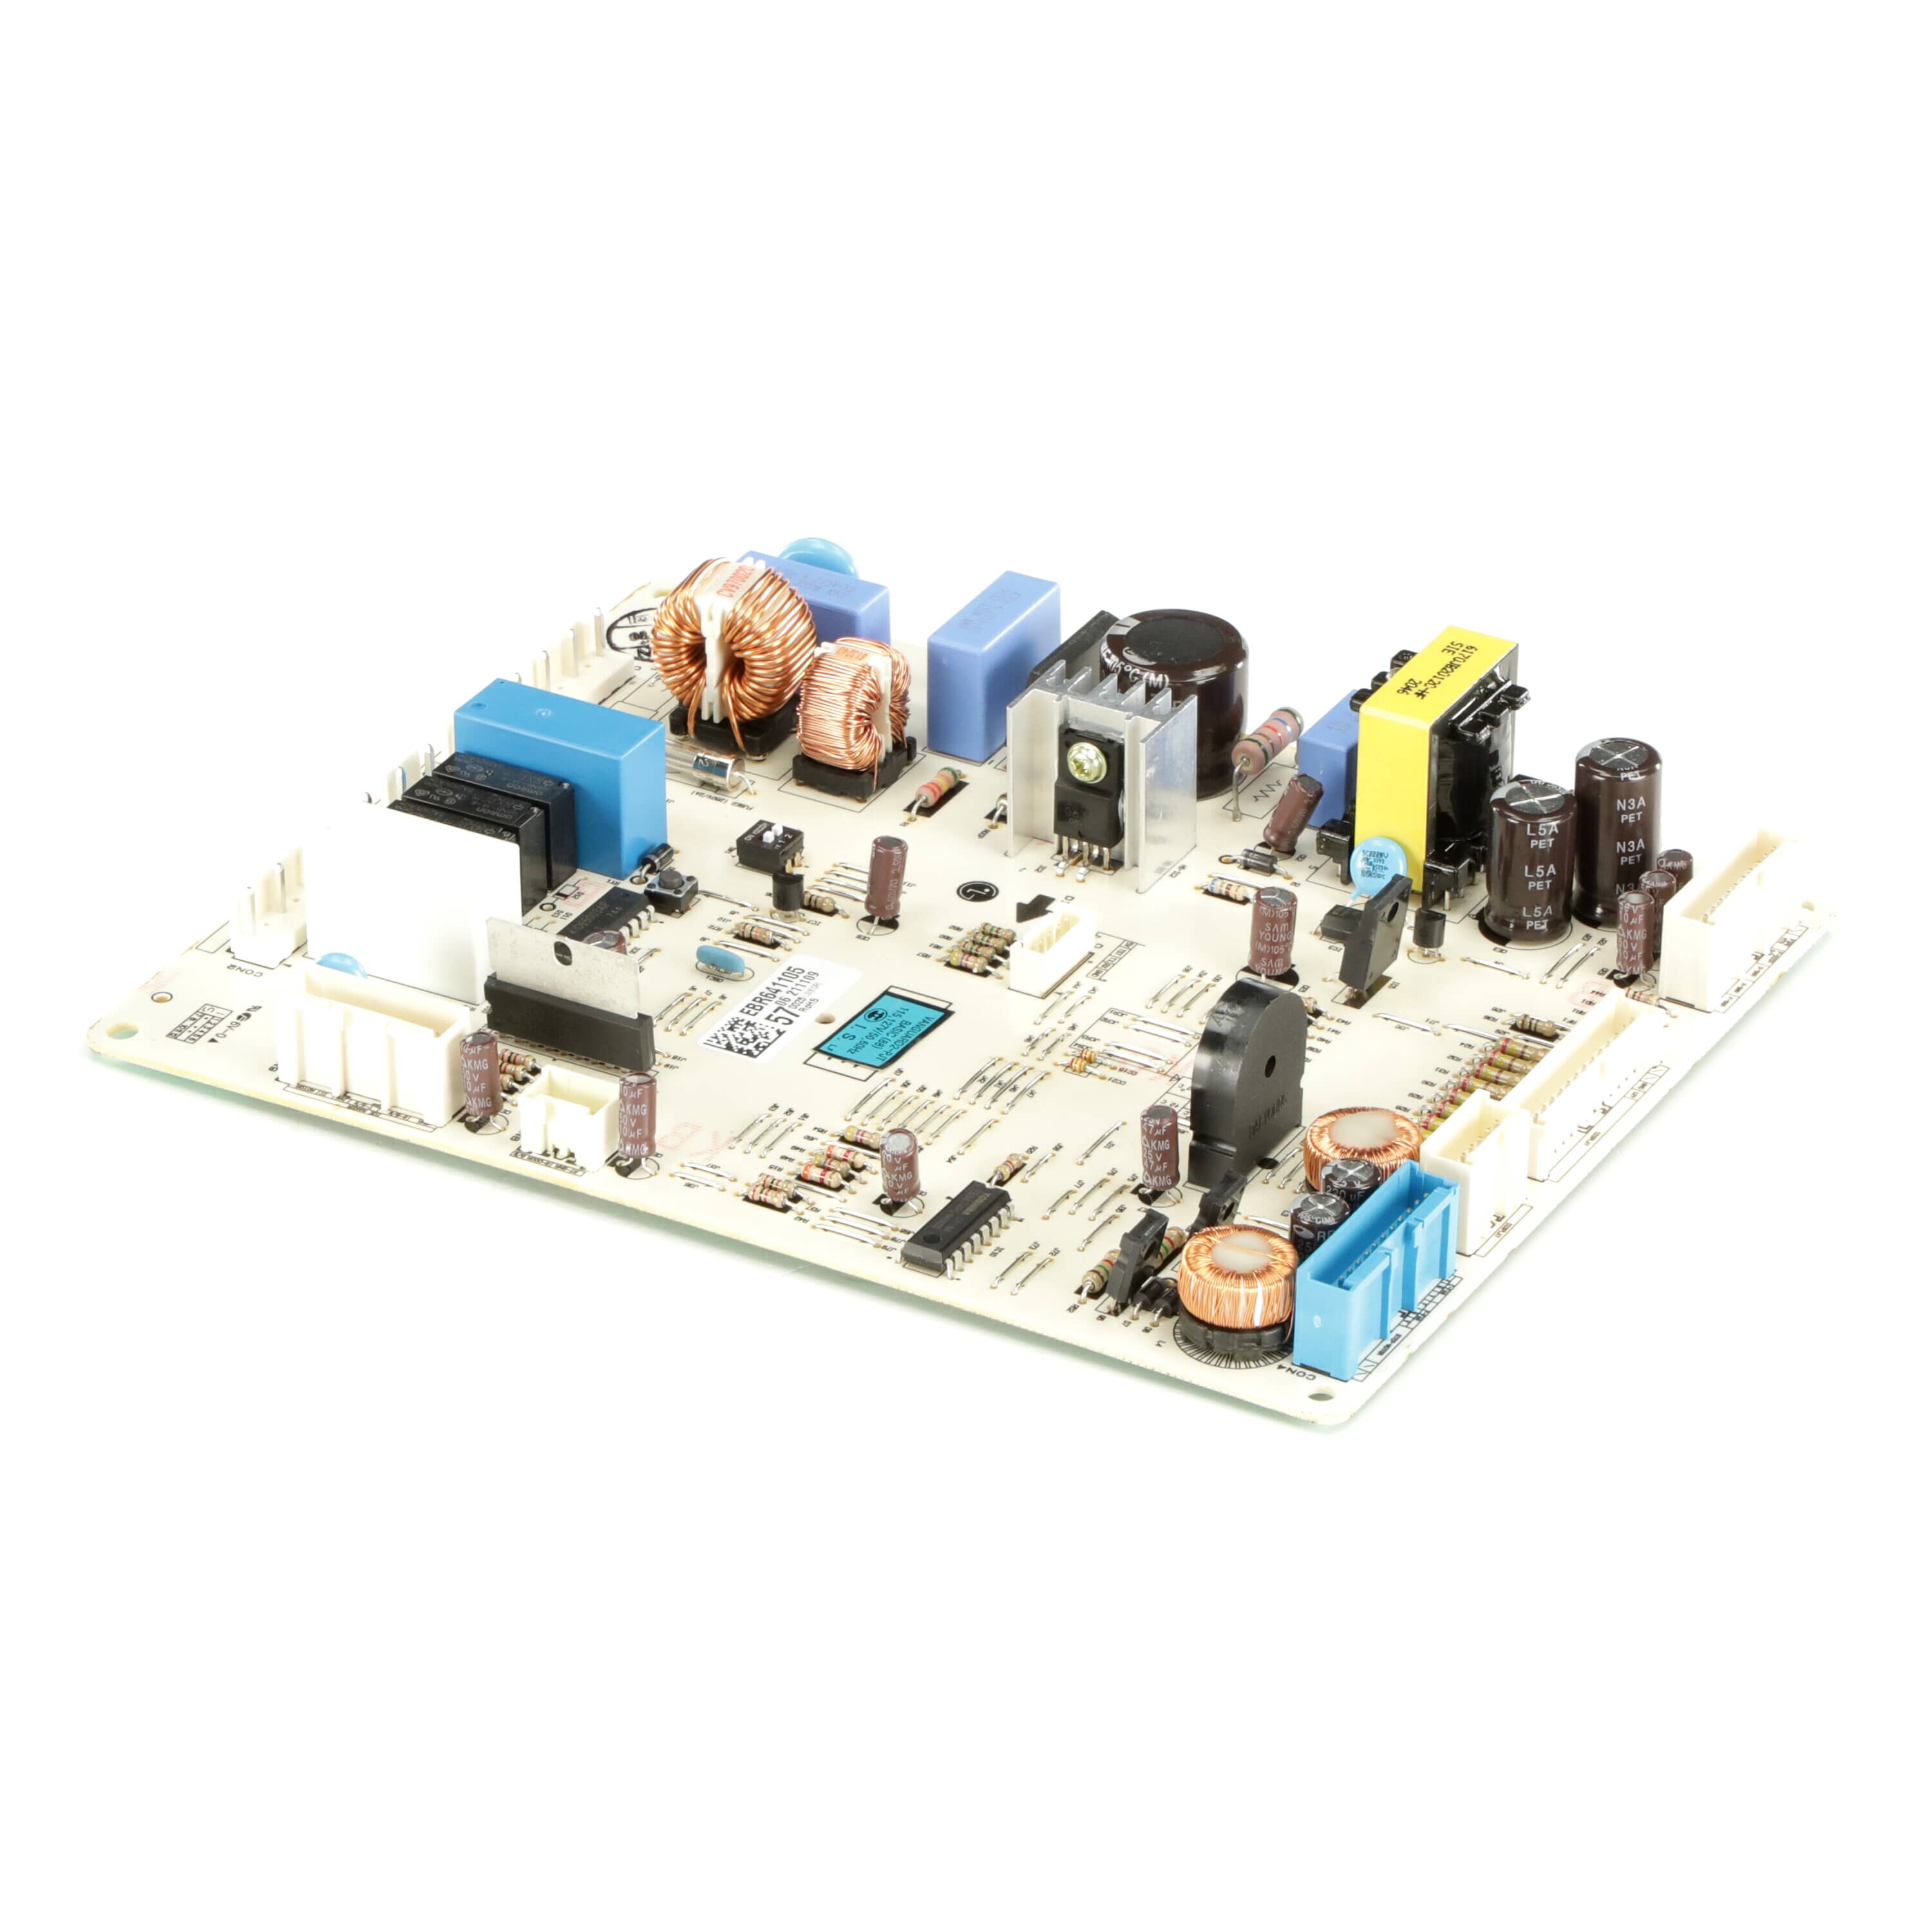 LG EBR64110557 Refrigerator Electronic Control Board